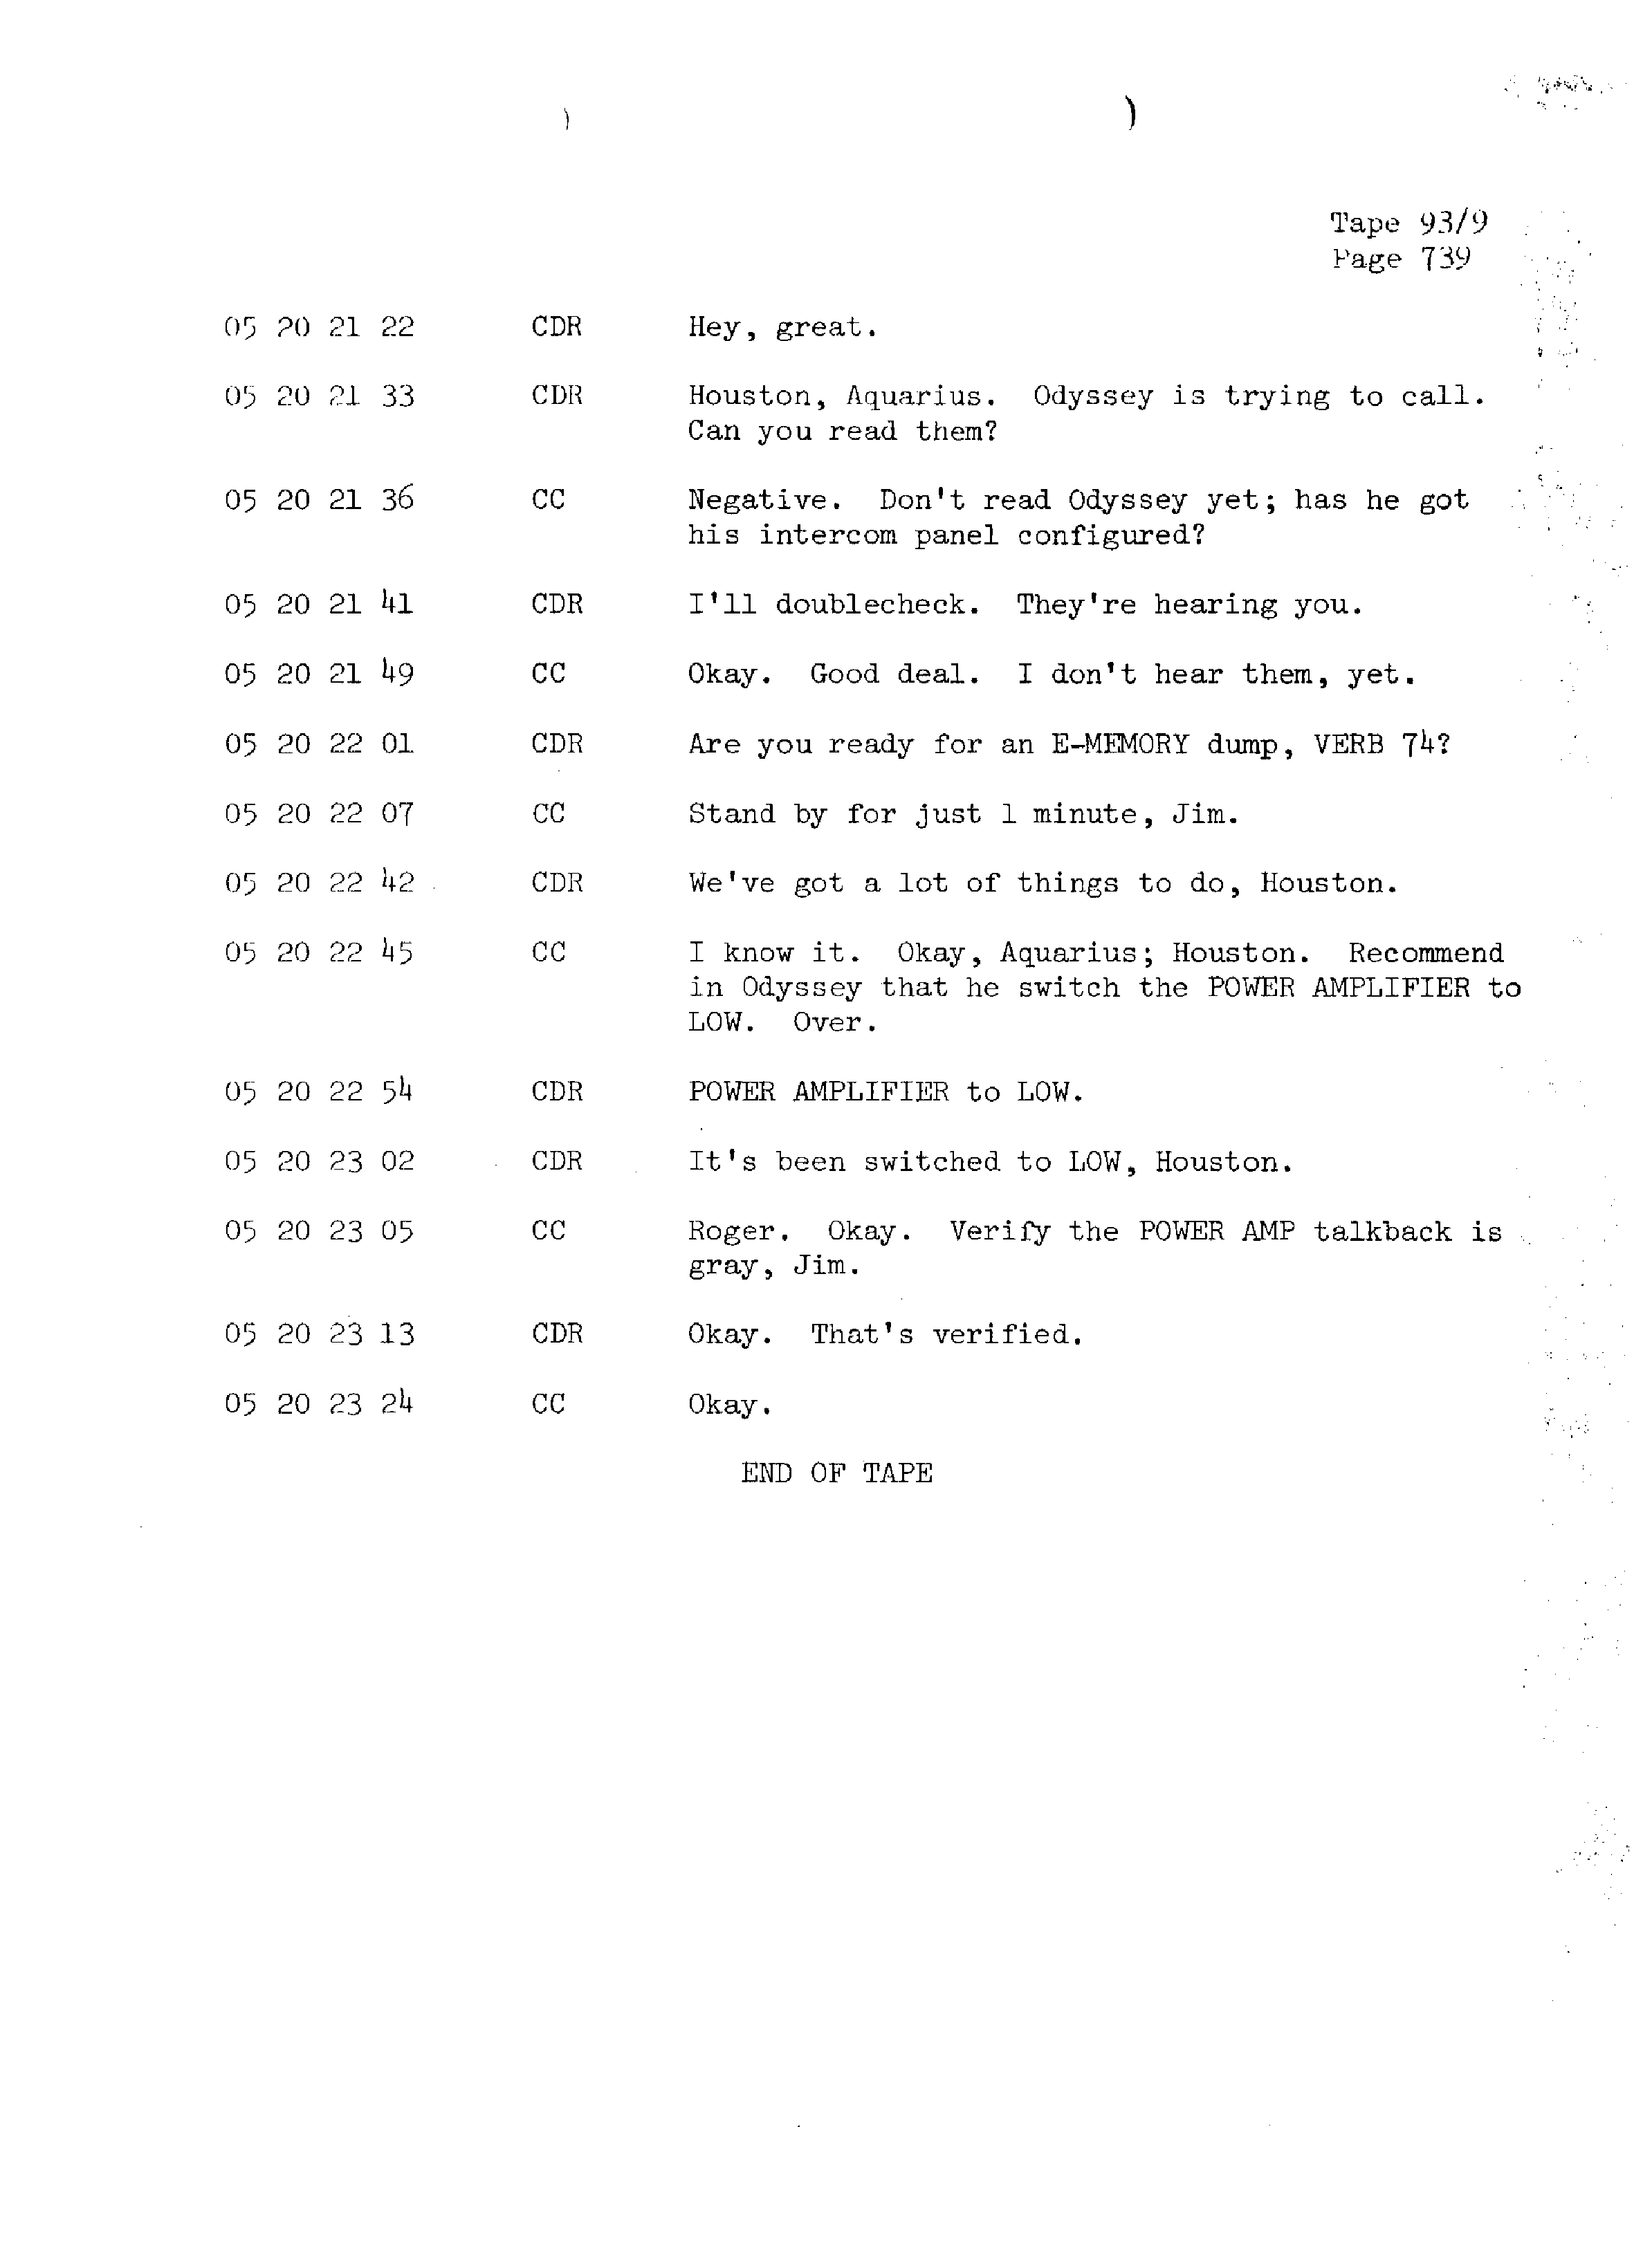 Page 746 of Apollo 13’s original transcript